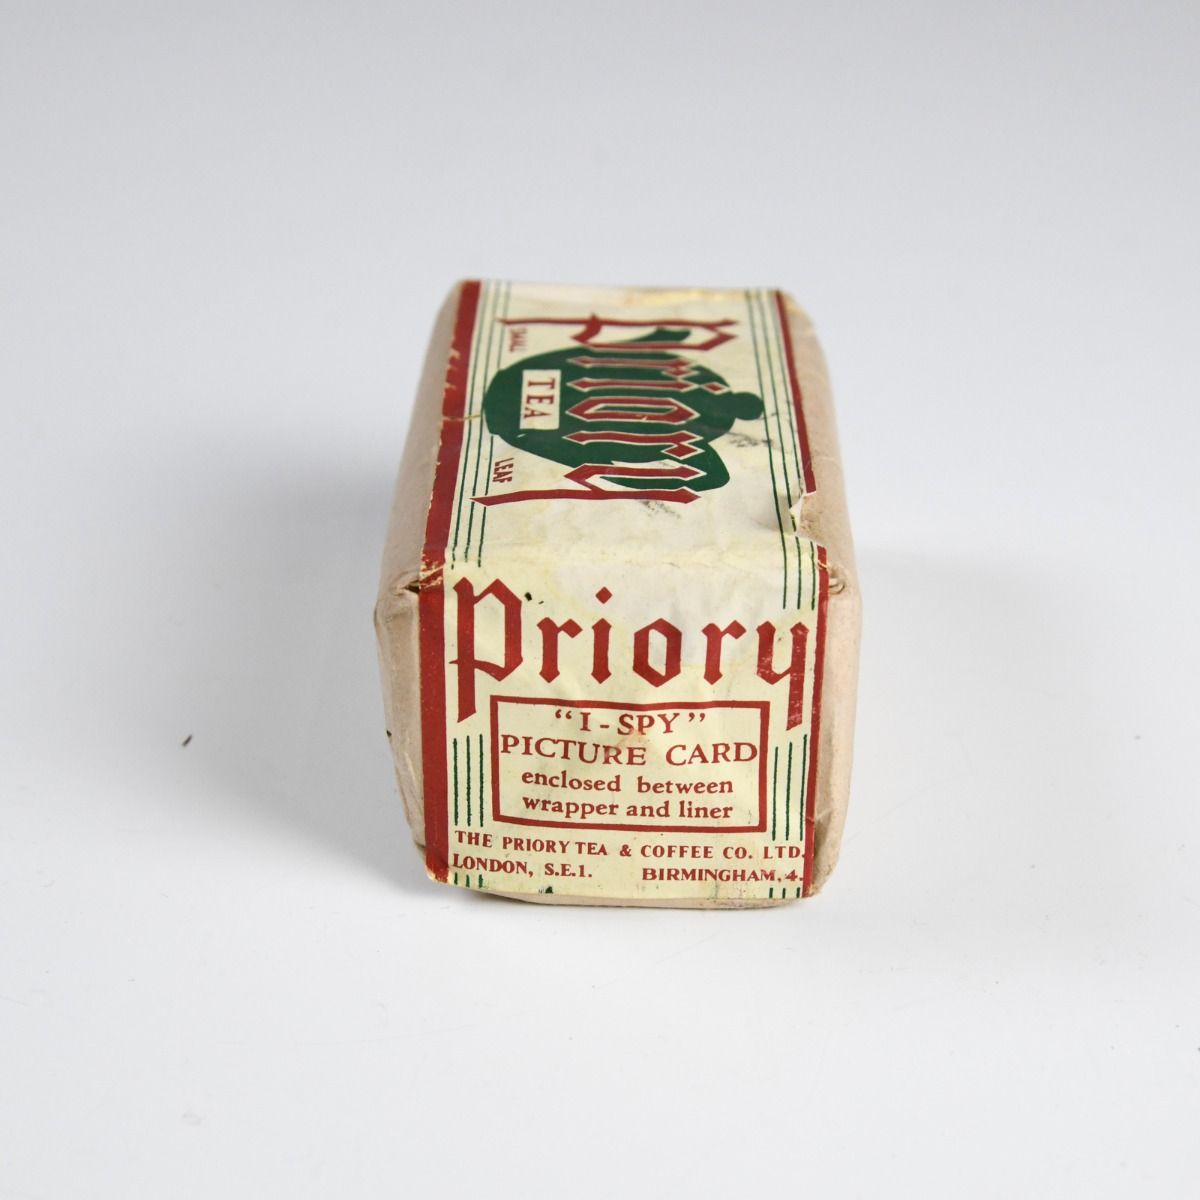 Vintage 1950s Packet of Priory Tea